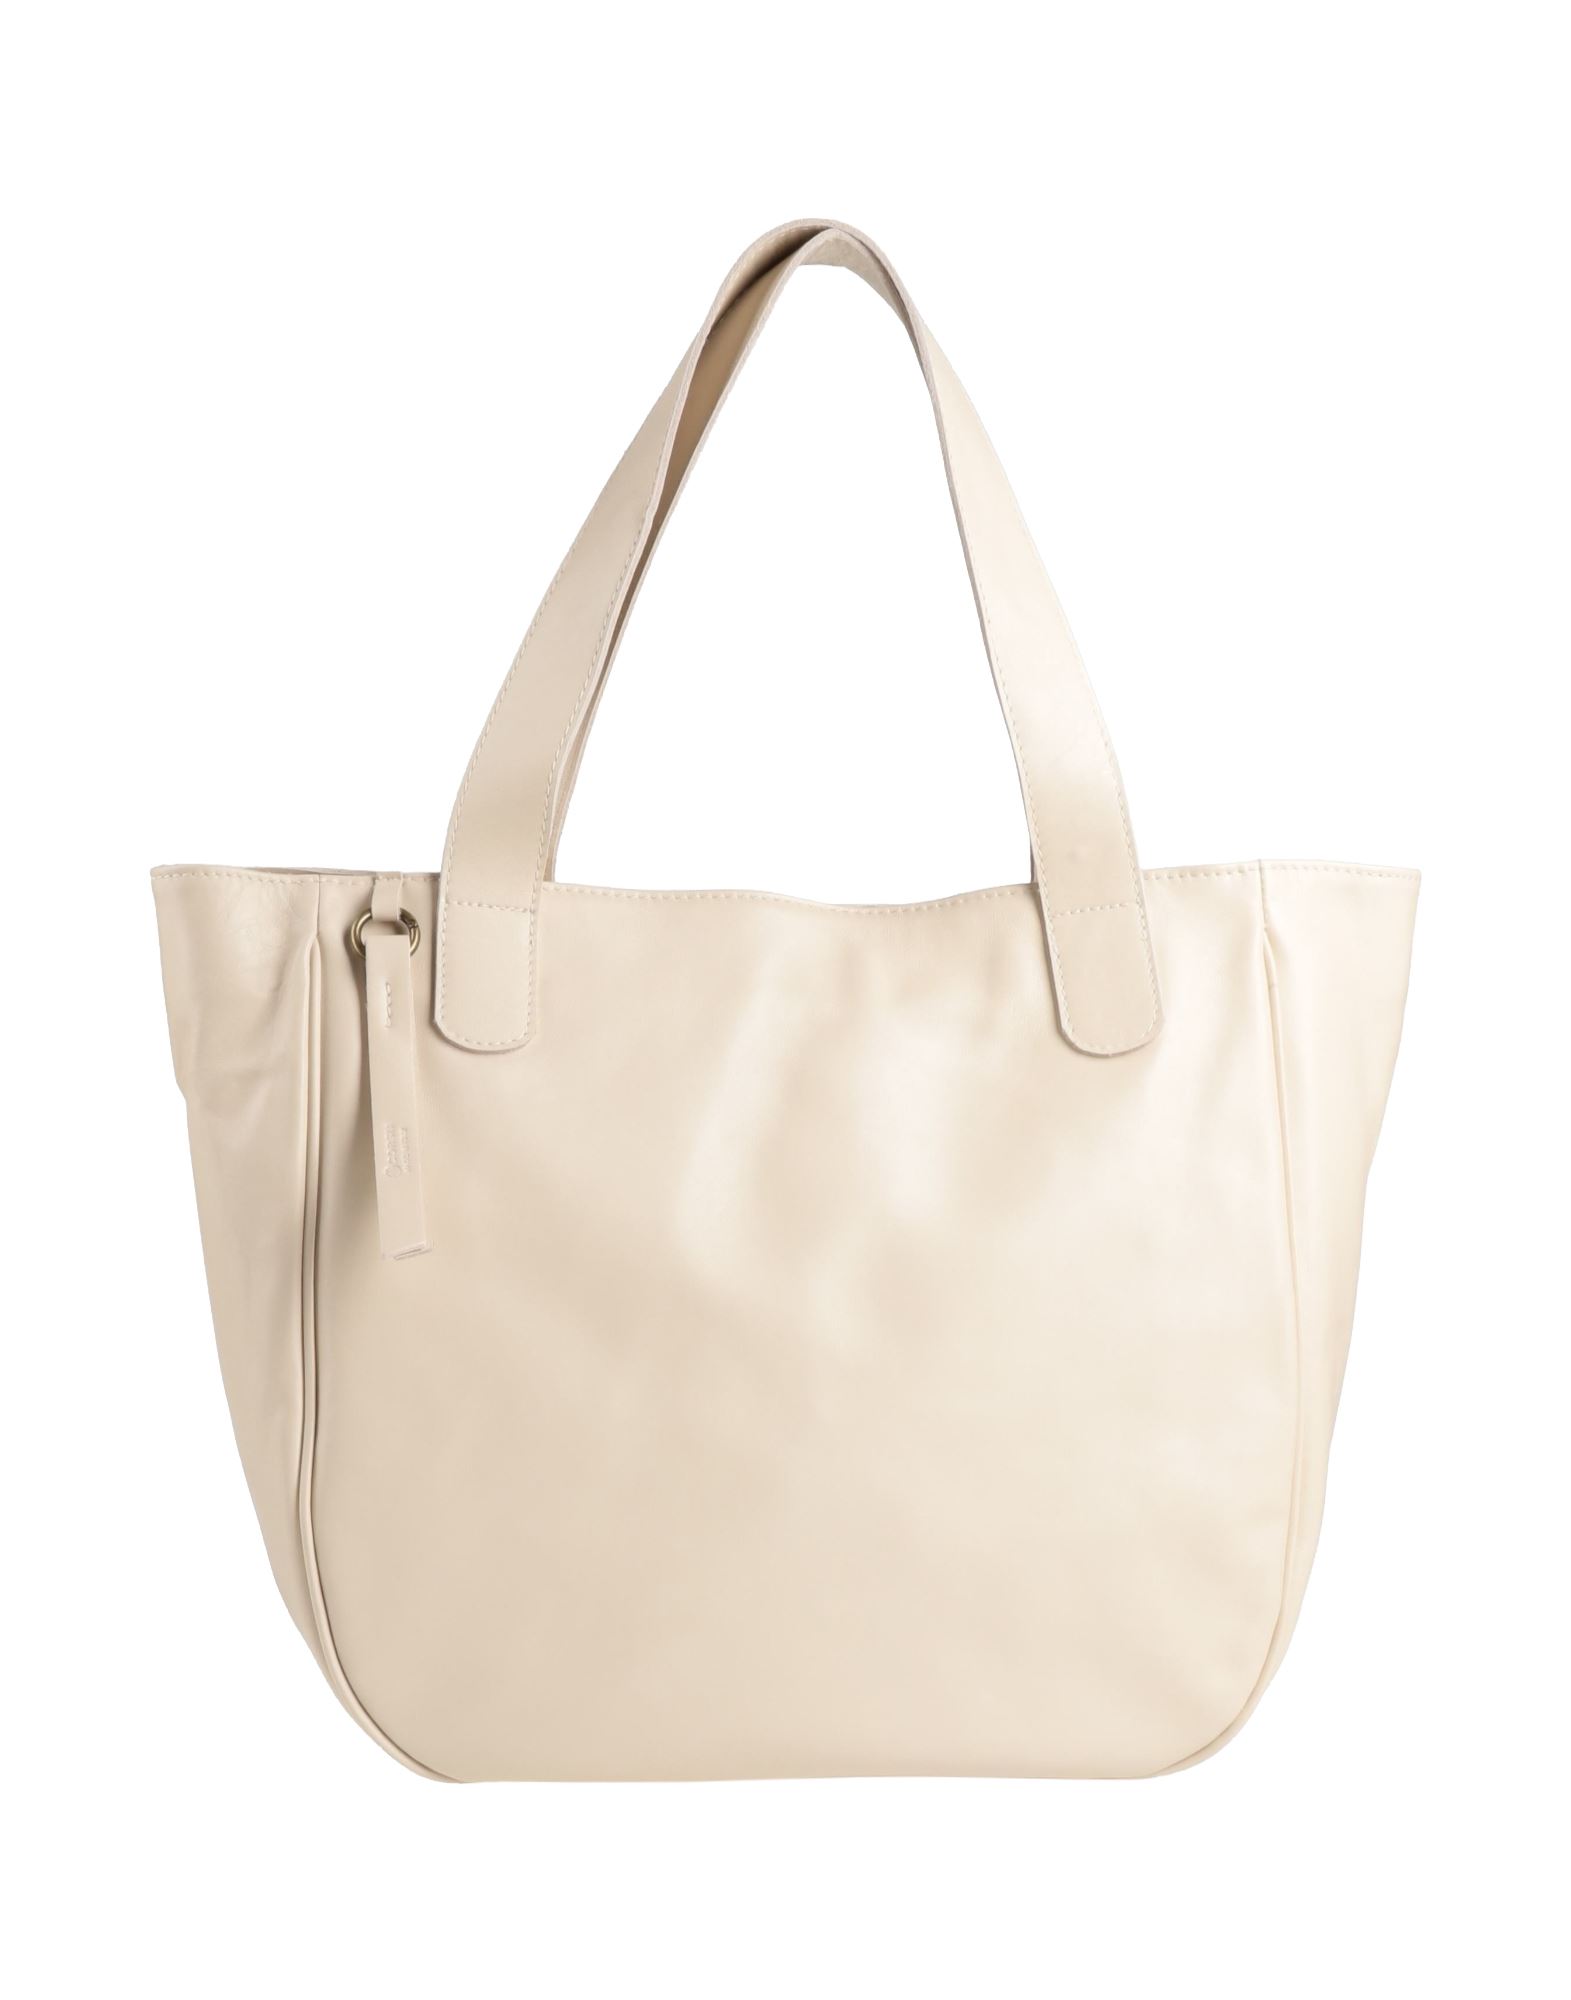 Corsia Handbags In White